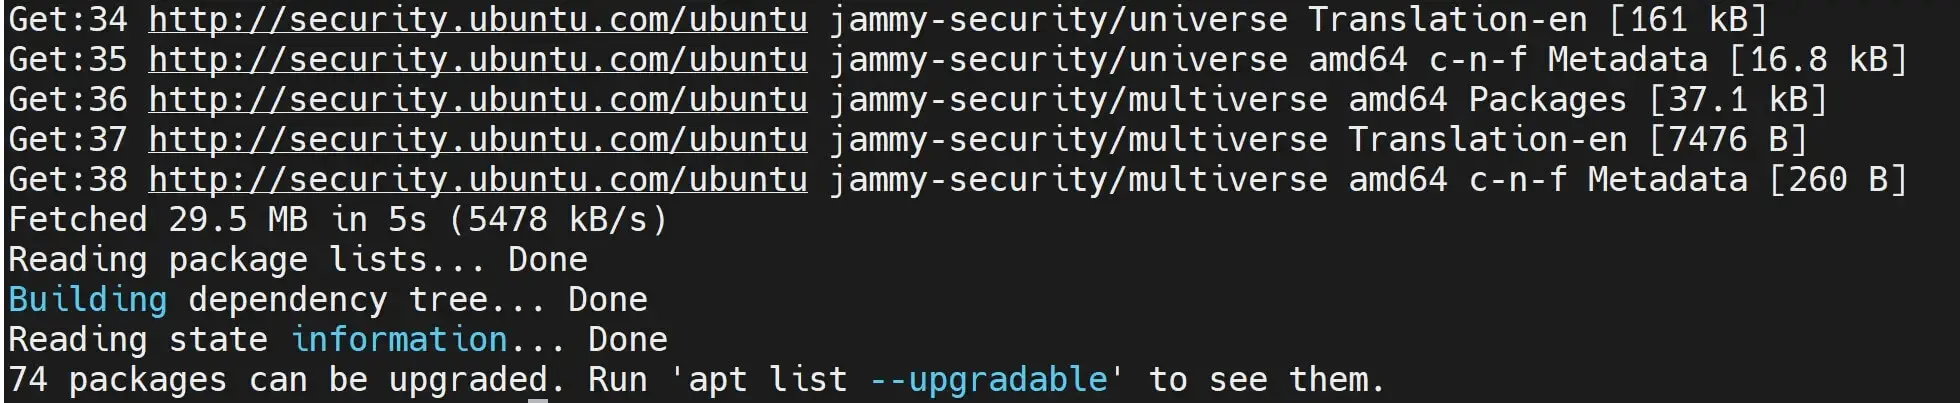 Update Ubuntu Package Index